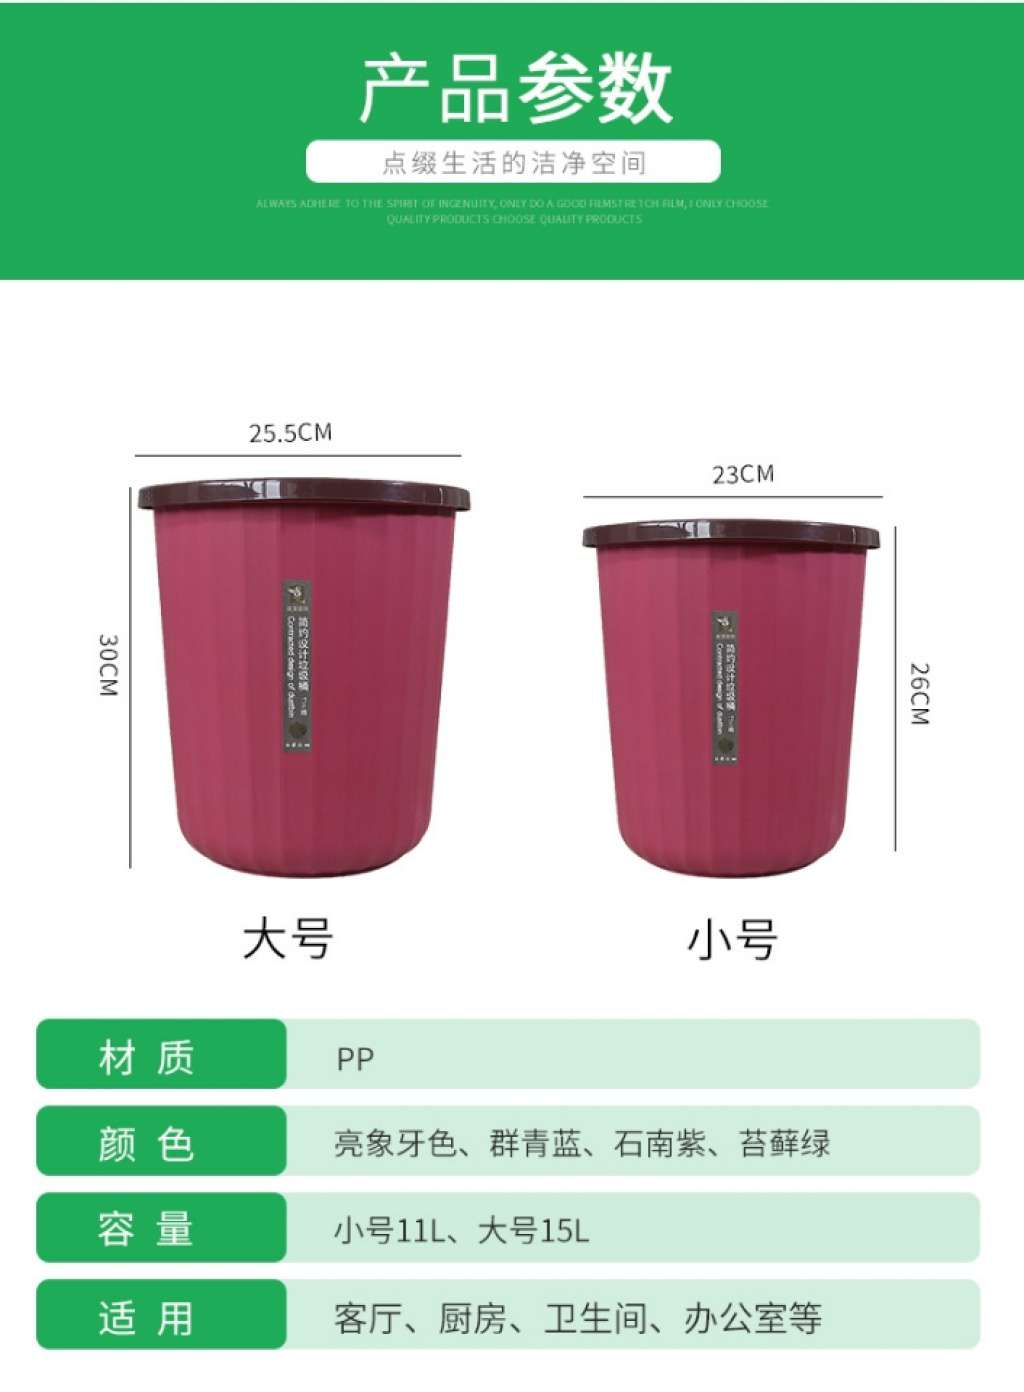 SJ35-1903A创意家用可拆卸垃圾桶 客厅卧室餐厅垃圾收纳桶清洁详情图5